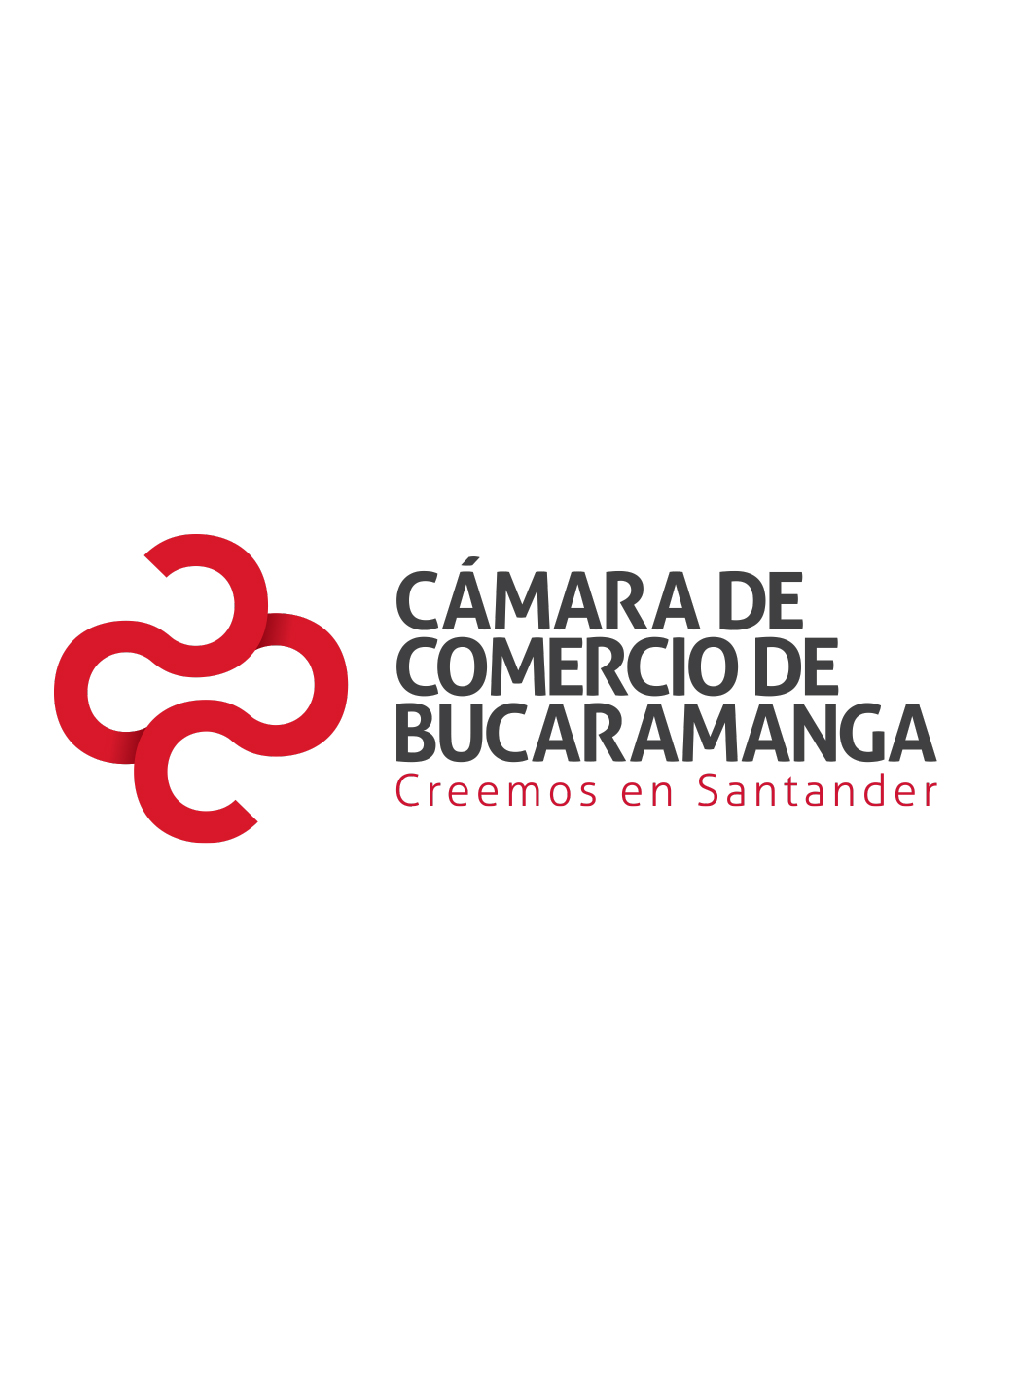 Nuevas empresas constituidas Santander 2009 - I semestre